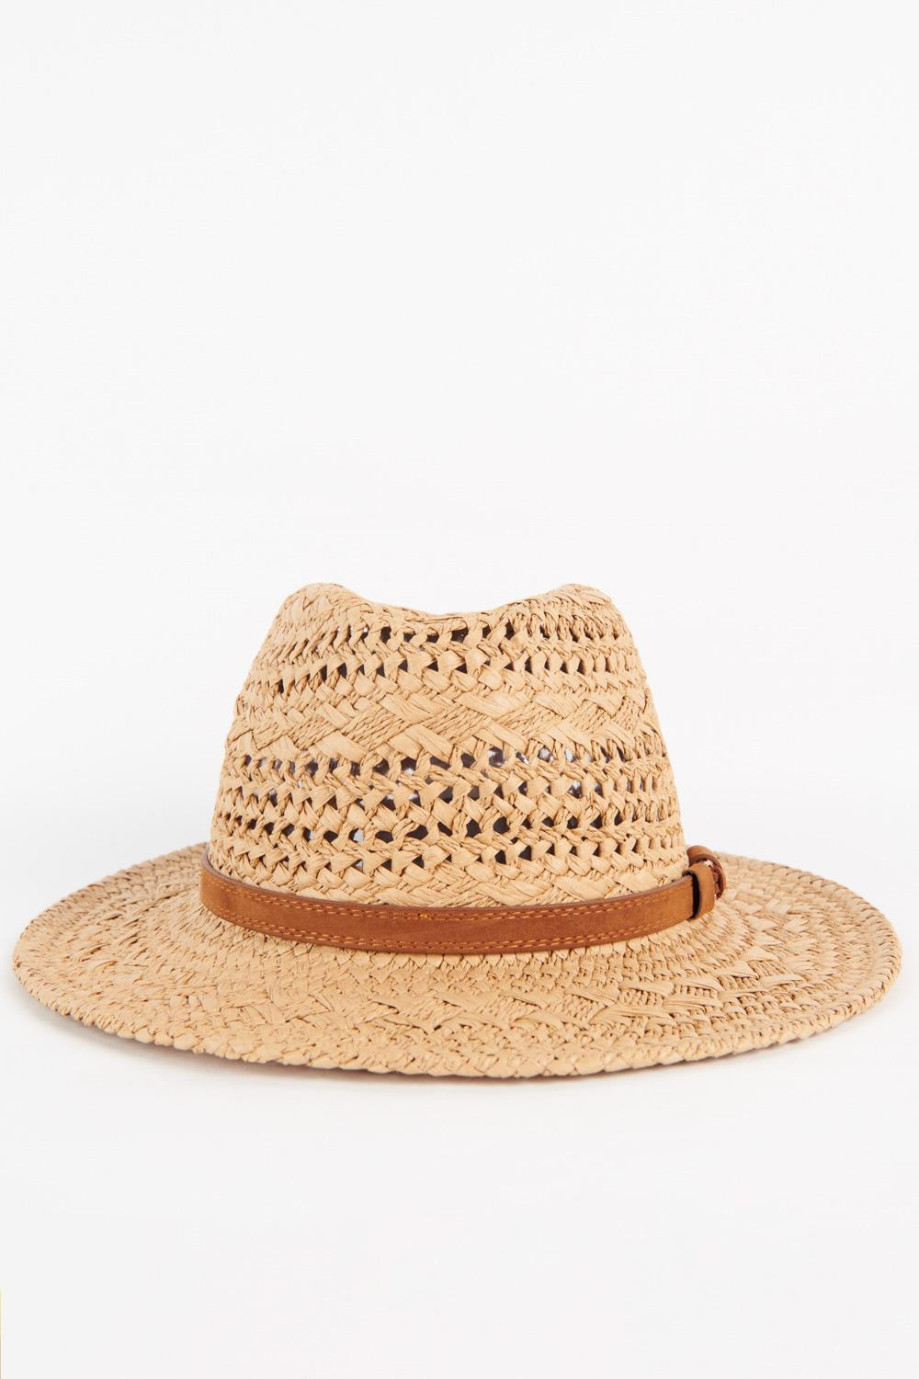 Sombrero de paja para hombre estilo fedora color kaky, con lazo en color contraste.